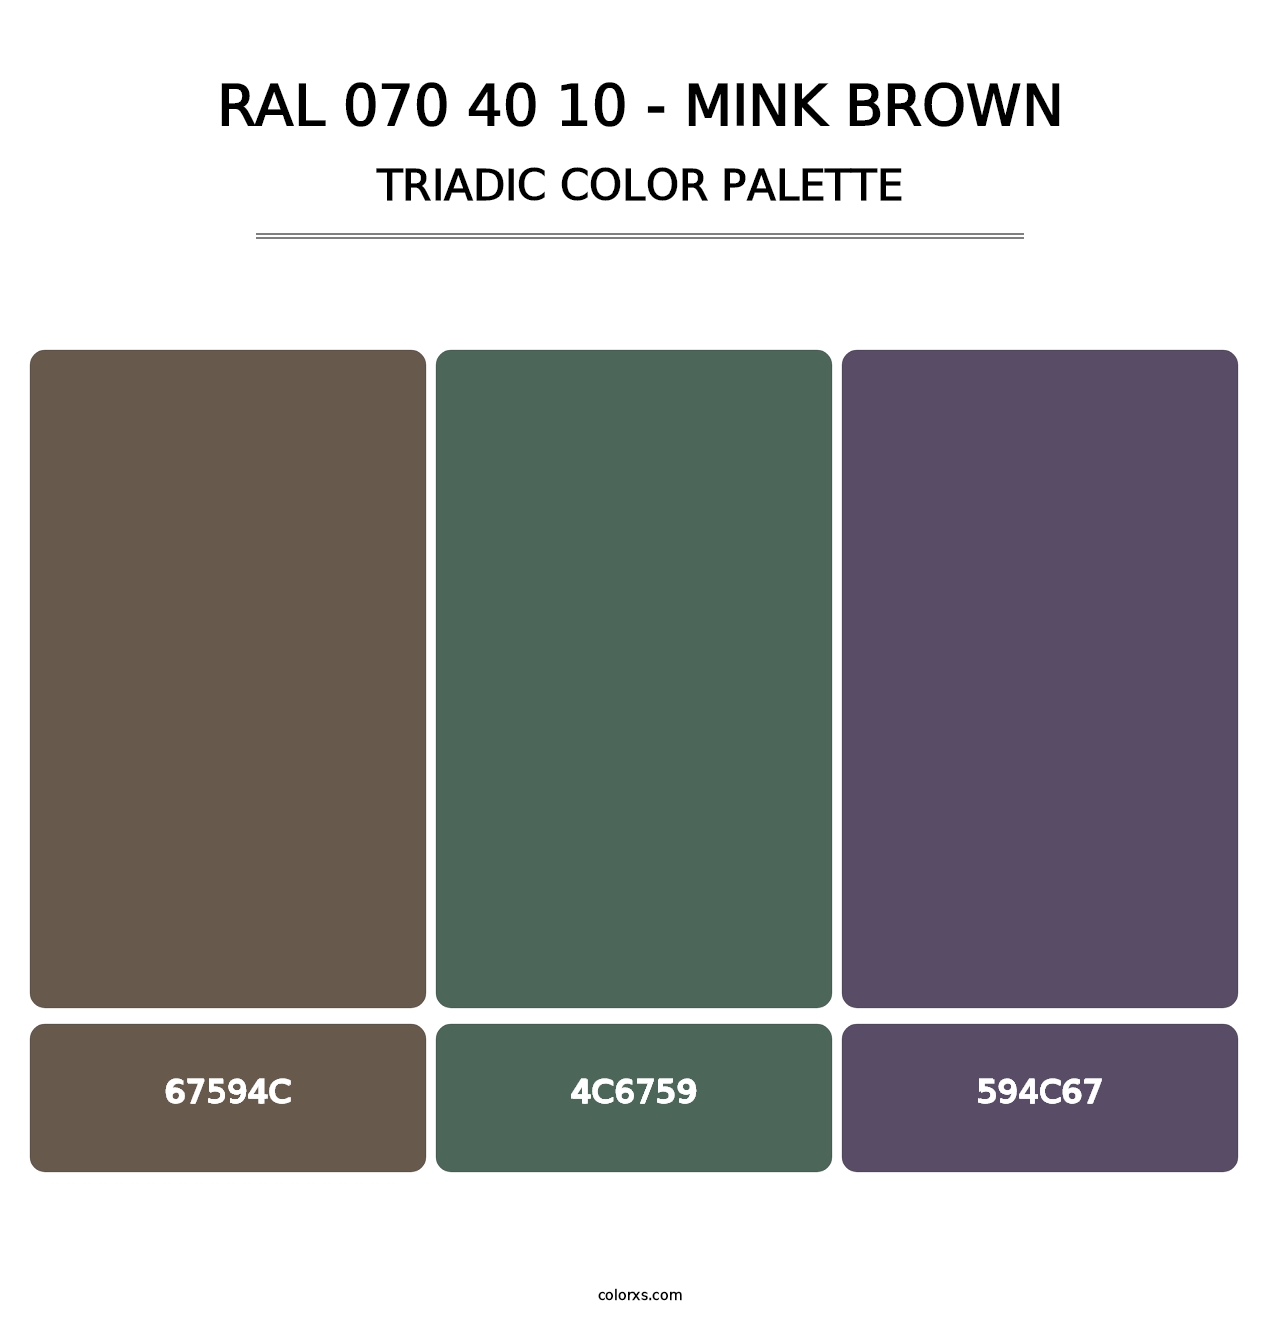 RAL 070 40 10 - Mink Brown - Triadic Color Palette